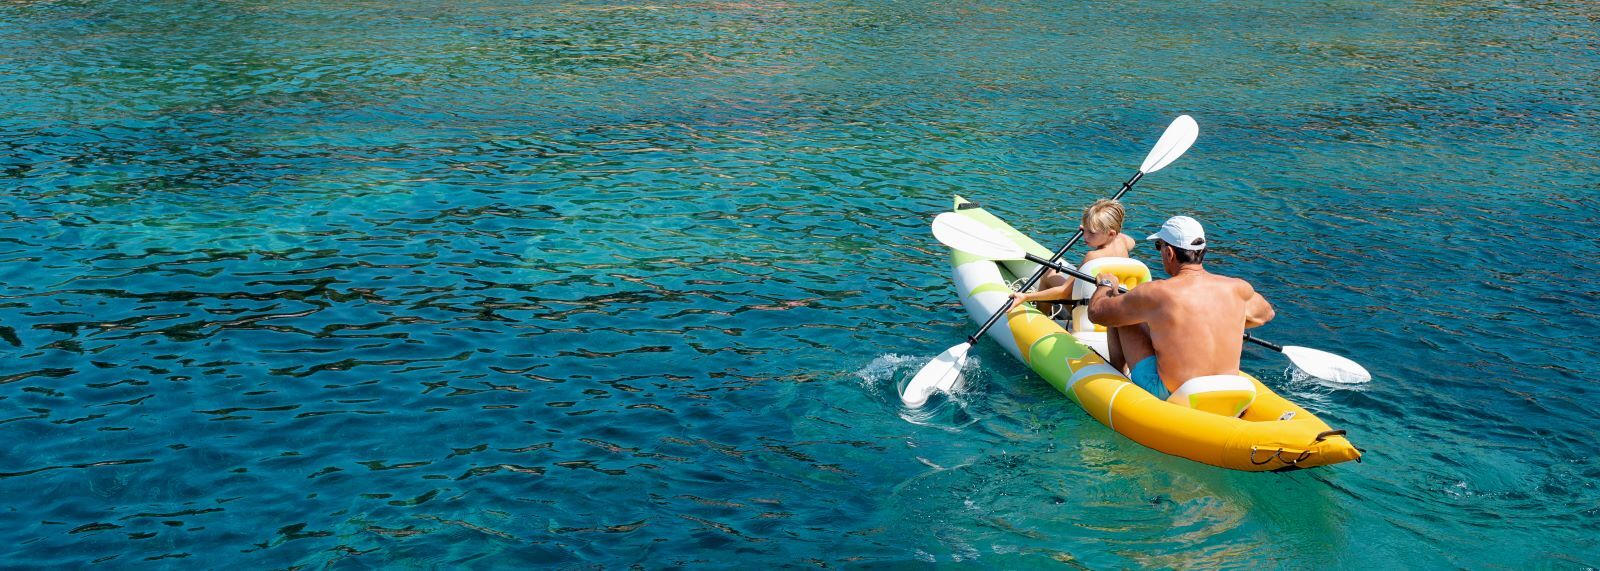 kayaking on anna maria island